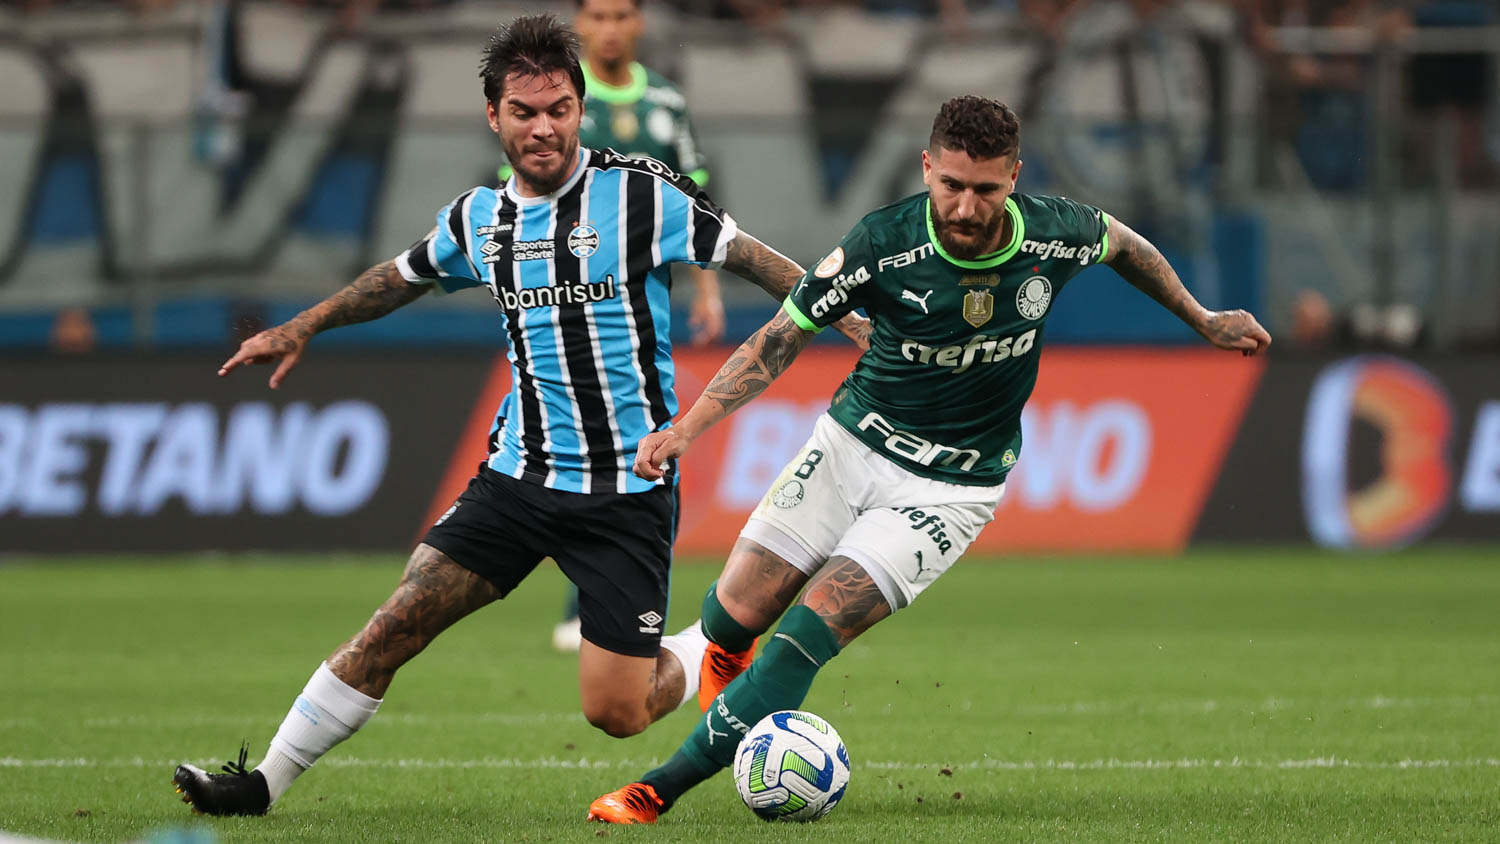 Pré-lista do Palmeiras no Mundial tem Dudu com a camisa 7 e Rony com a 10 -  Placar - O futebol sem barreiras para você